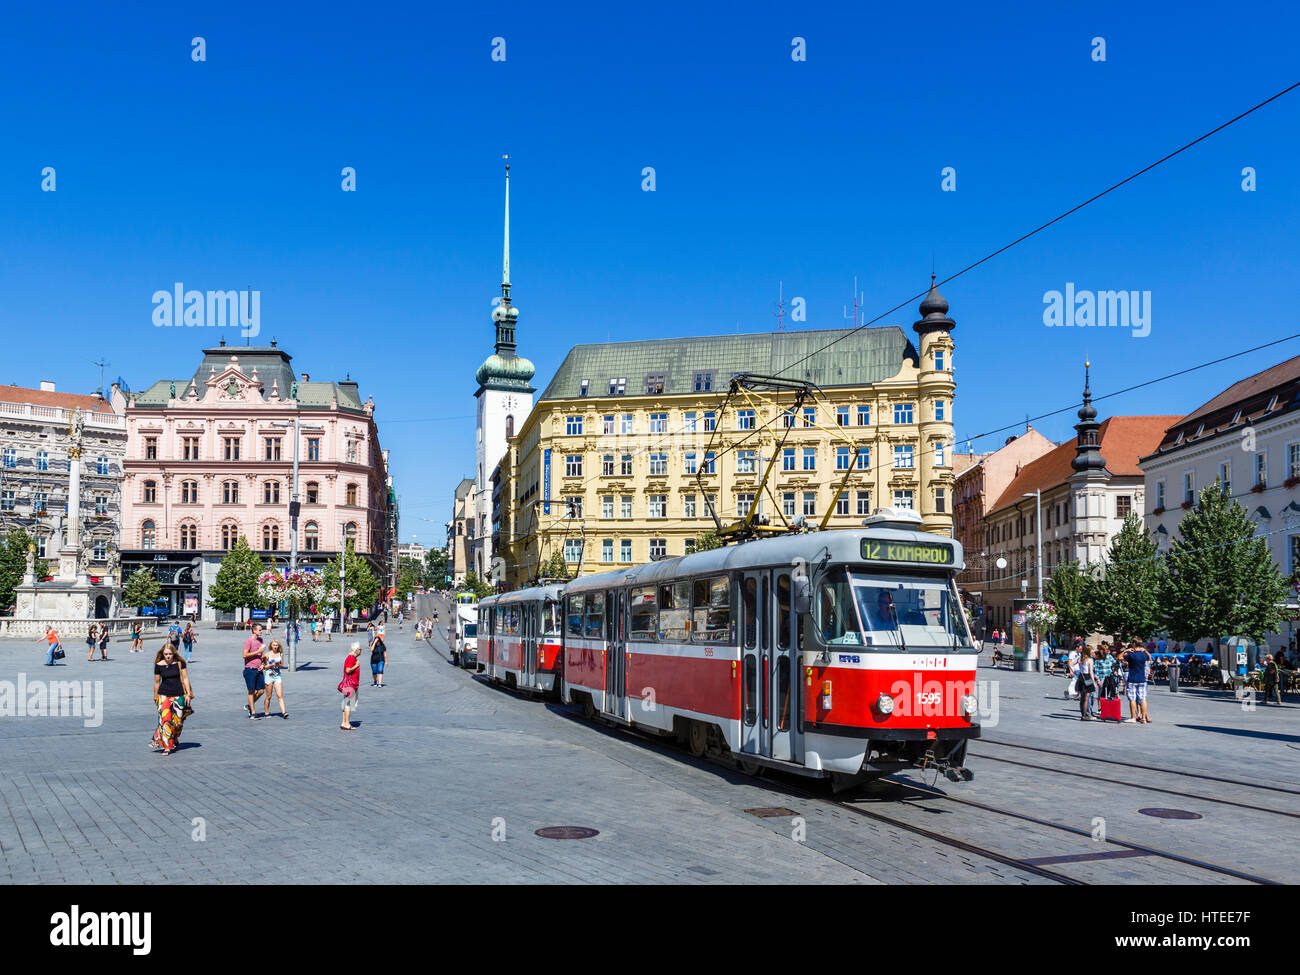 Brno, Tschechische Republik. Straßenbahn in Platz der Freiheit (Náměstí Svobody) im Zentrum der Altstadt, Brünn, Mähren, Tschechien Stockfoto